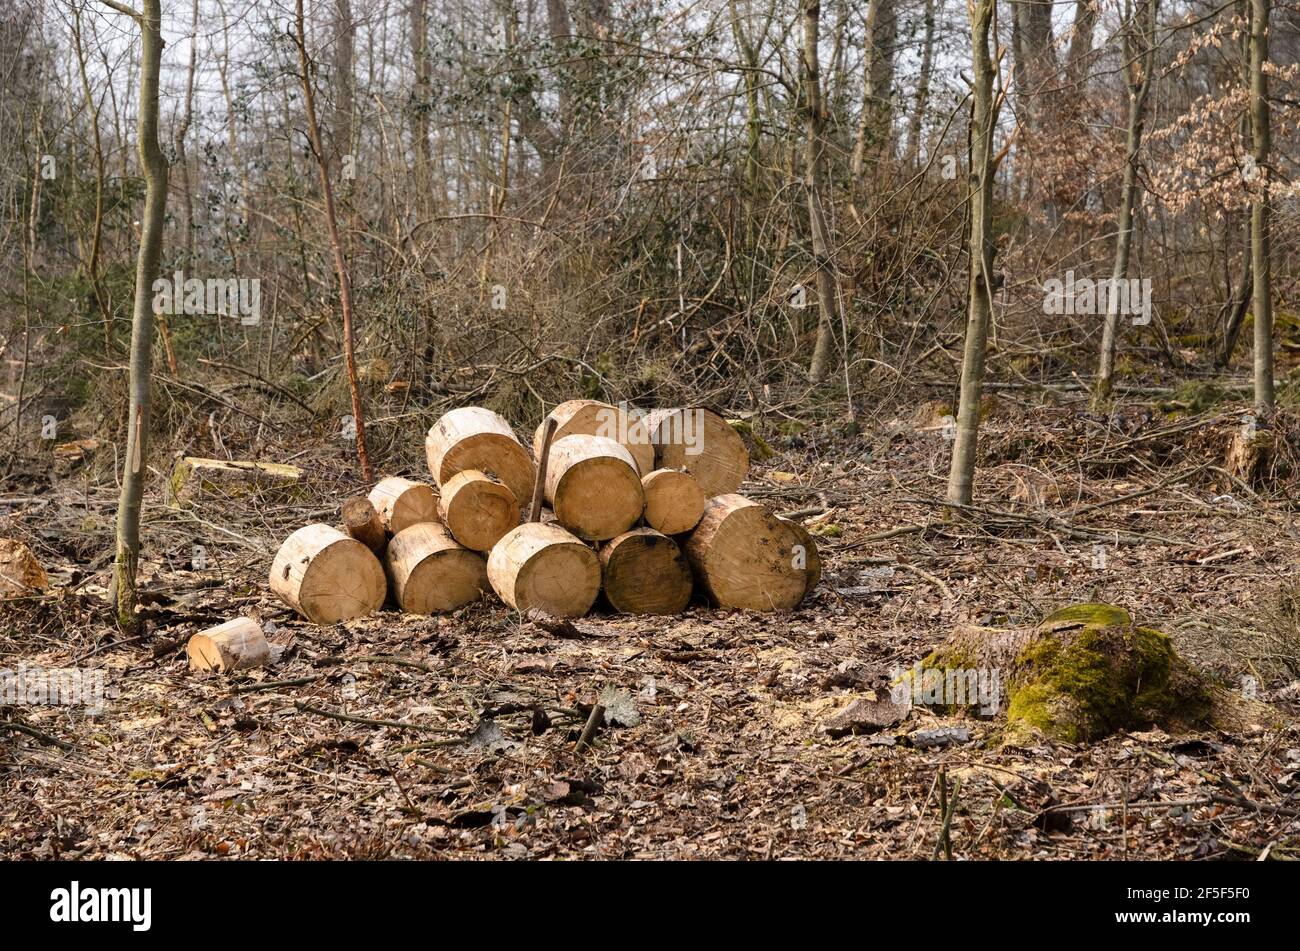 Holzfällerplatz oder Holzfällerplatz mit Haufen gehackter Stämme, Holzstapel im Wald, Querschnittsansicht, Rheinland-Pfalz, Deutschland, Europa Stockfoto